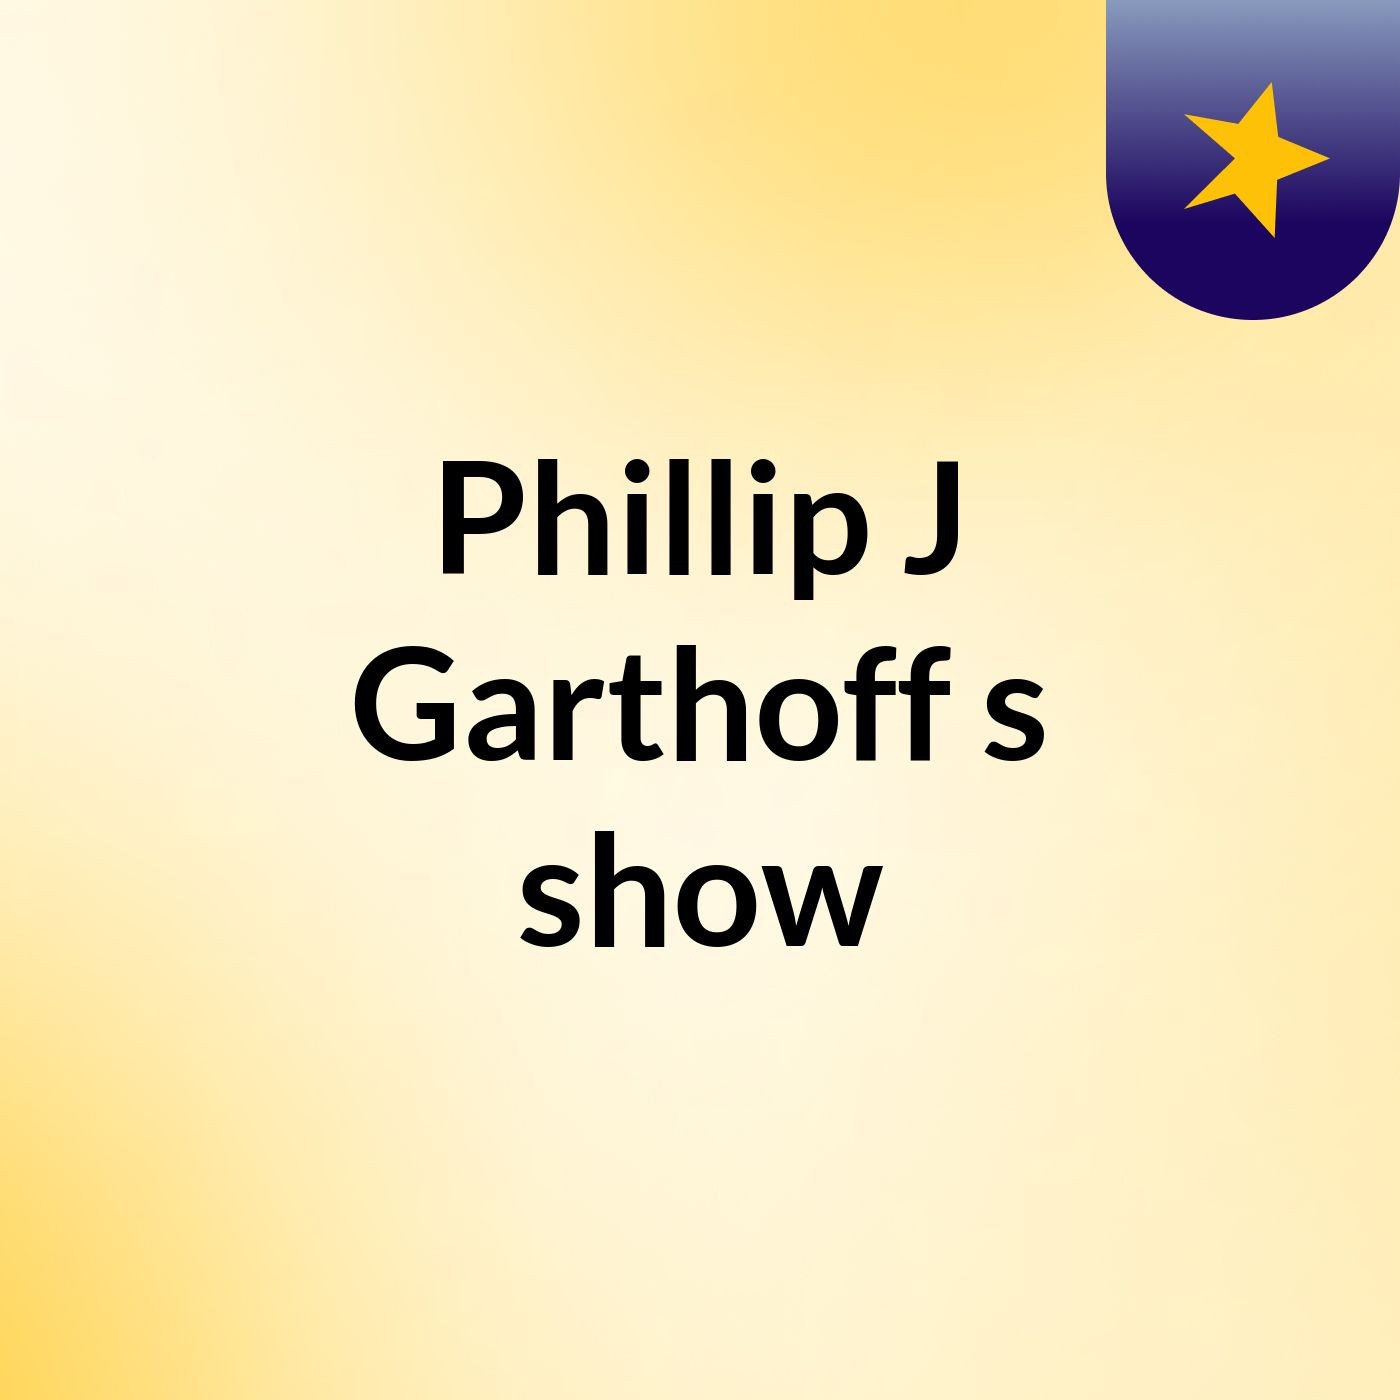 Episode 22 - Phillip J Garthoff's show